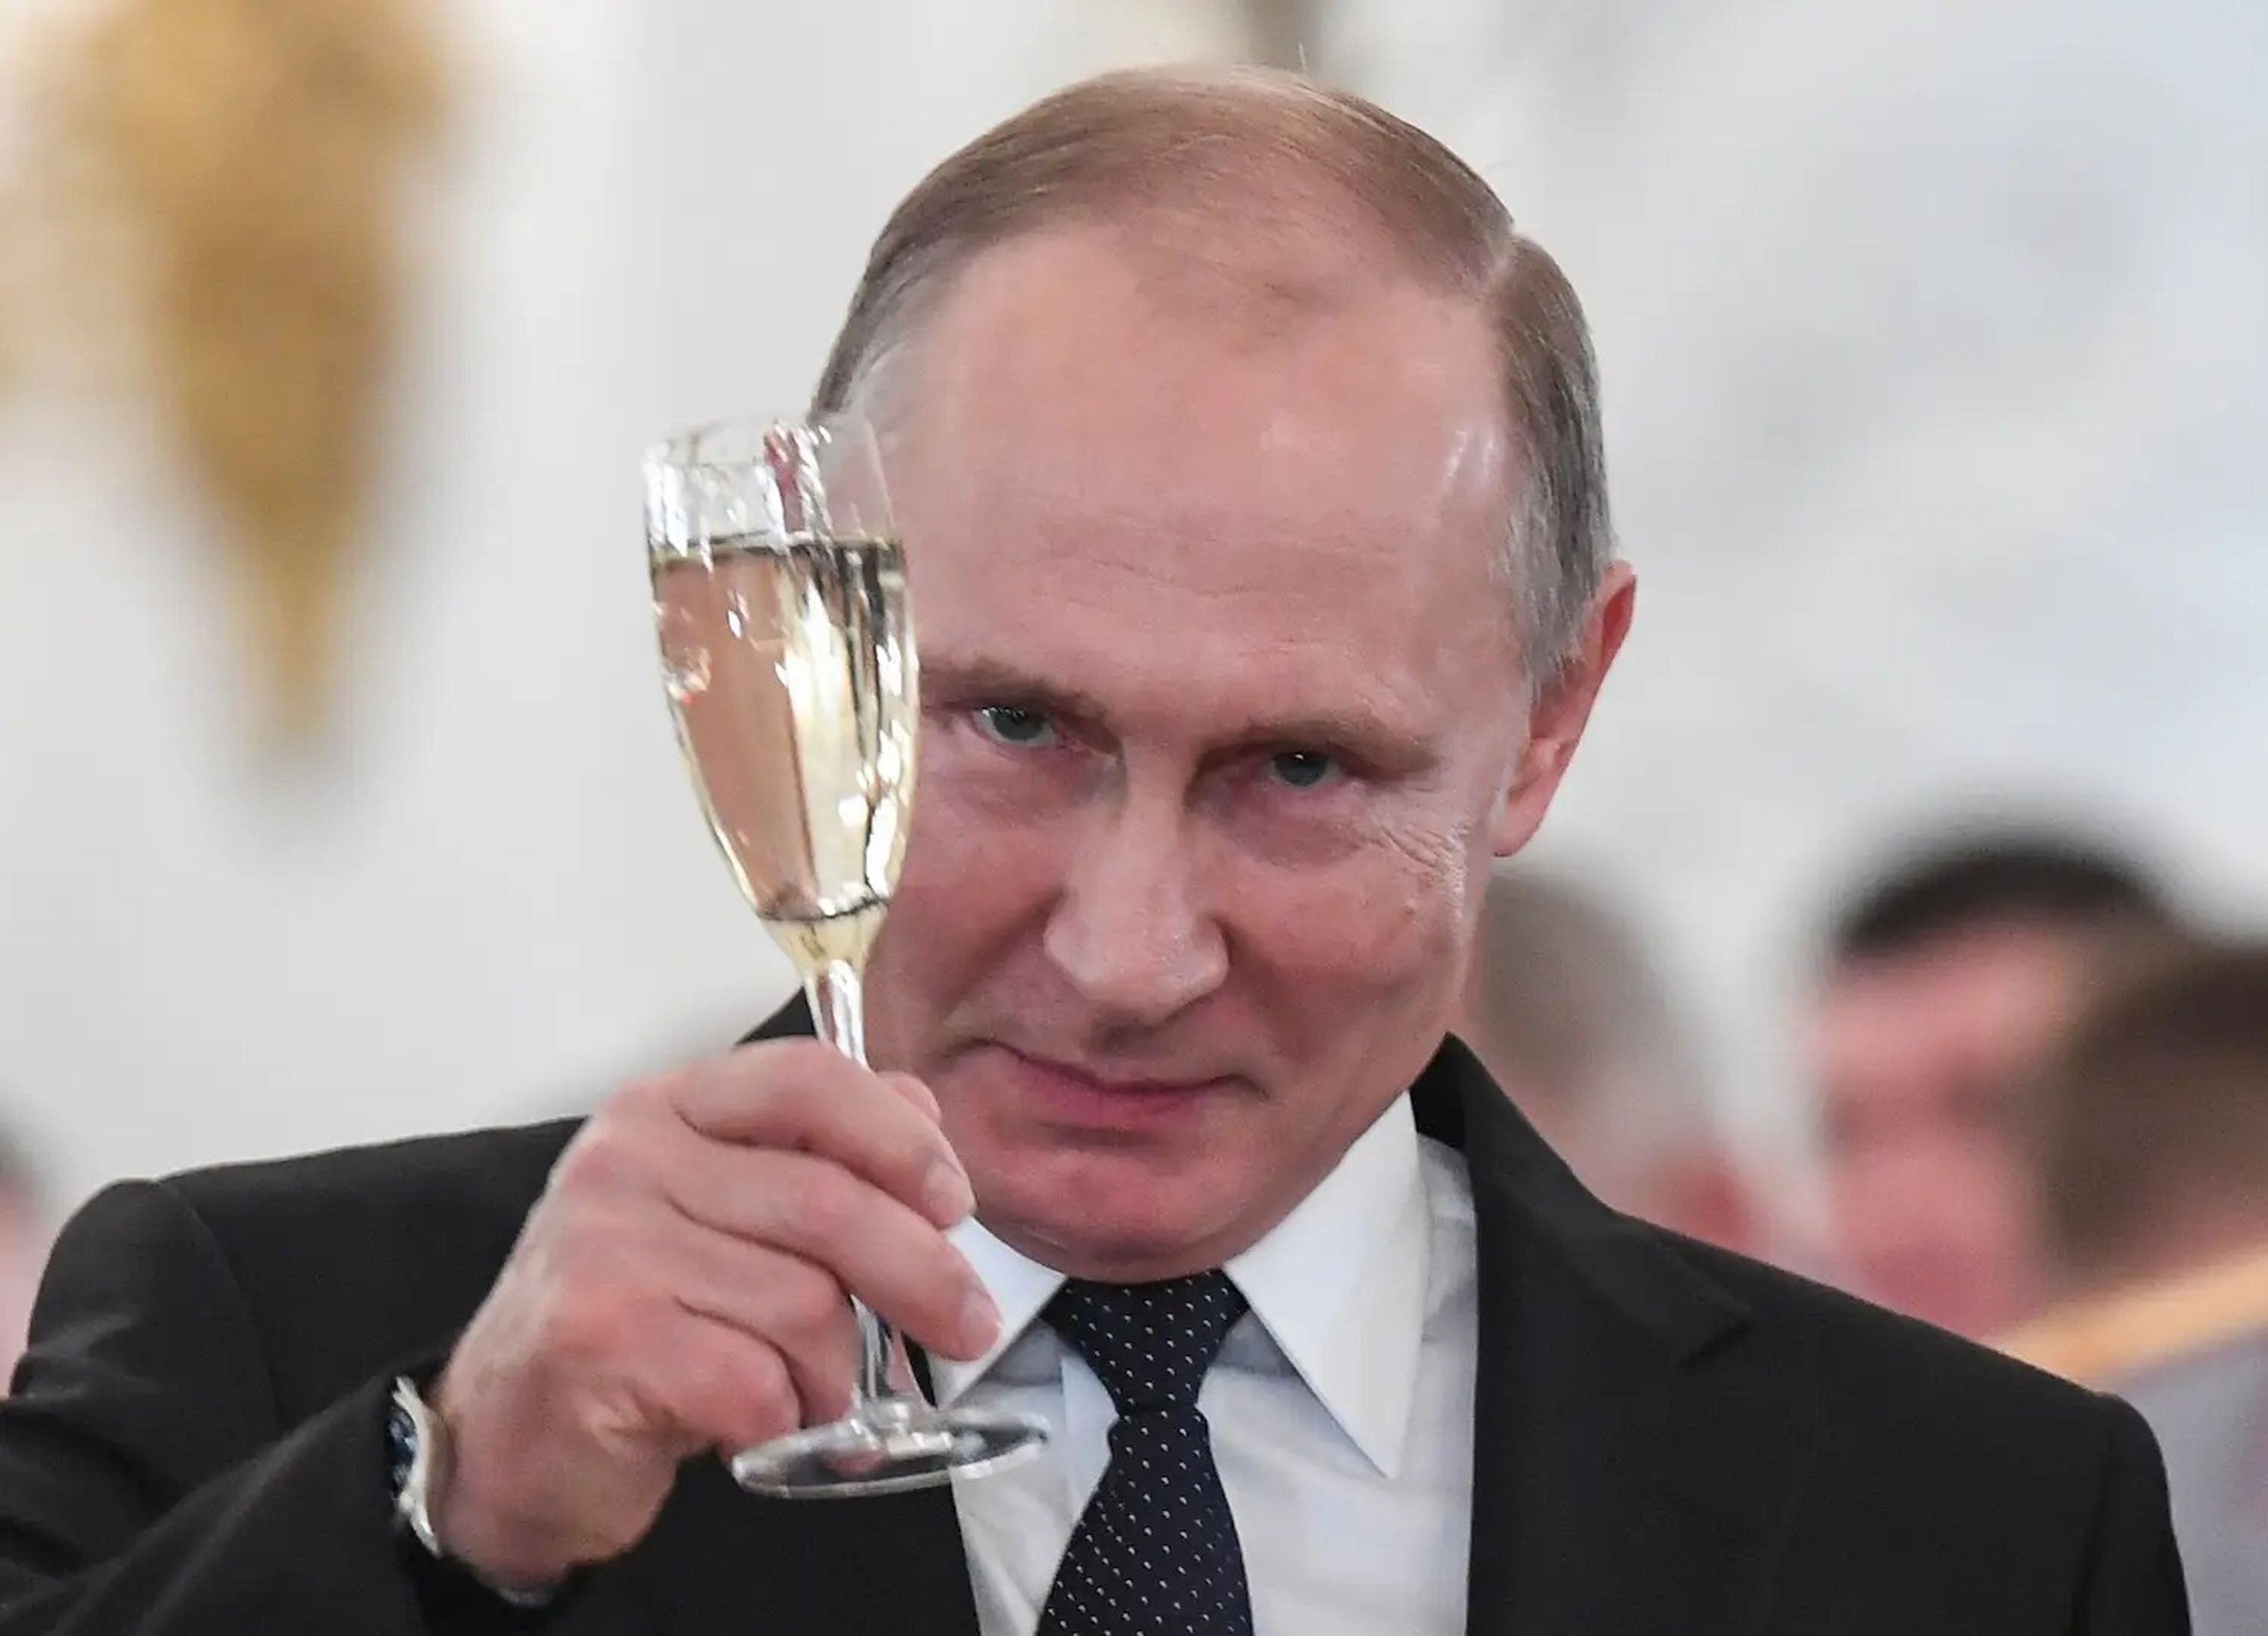 El presidente ruso Vladímir Putin brinda durante una ceremonia de entrega de premios en el Kremlin, en Moscú, Rusia, el 28 de diciembre de 2017.